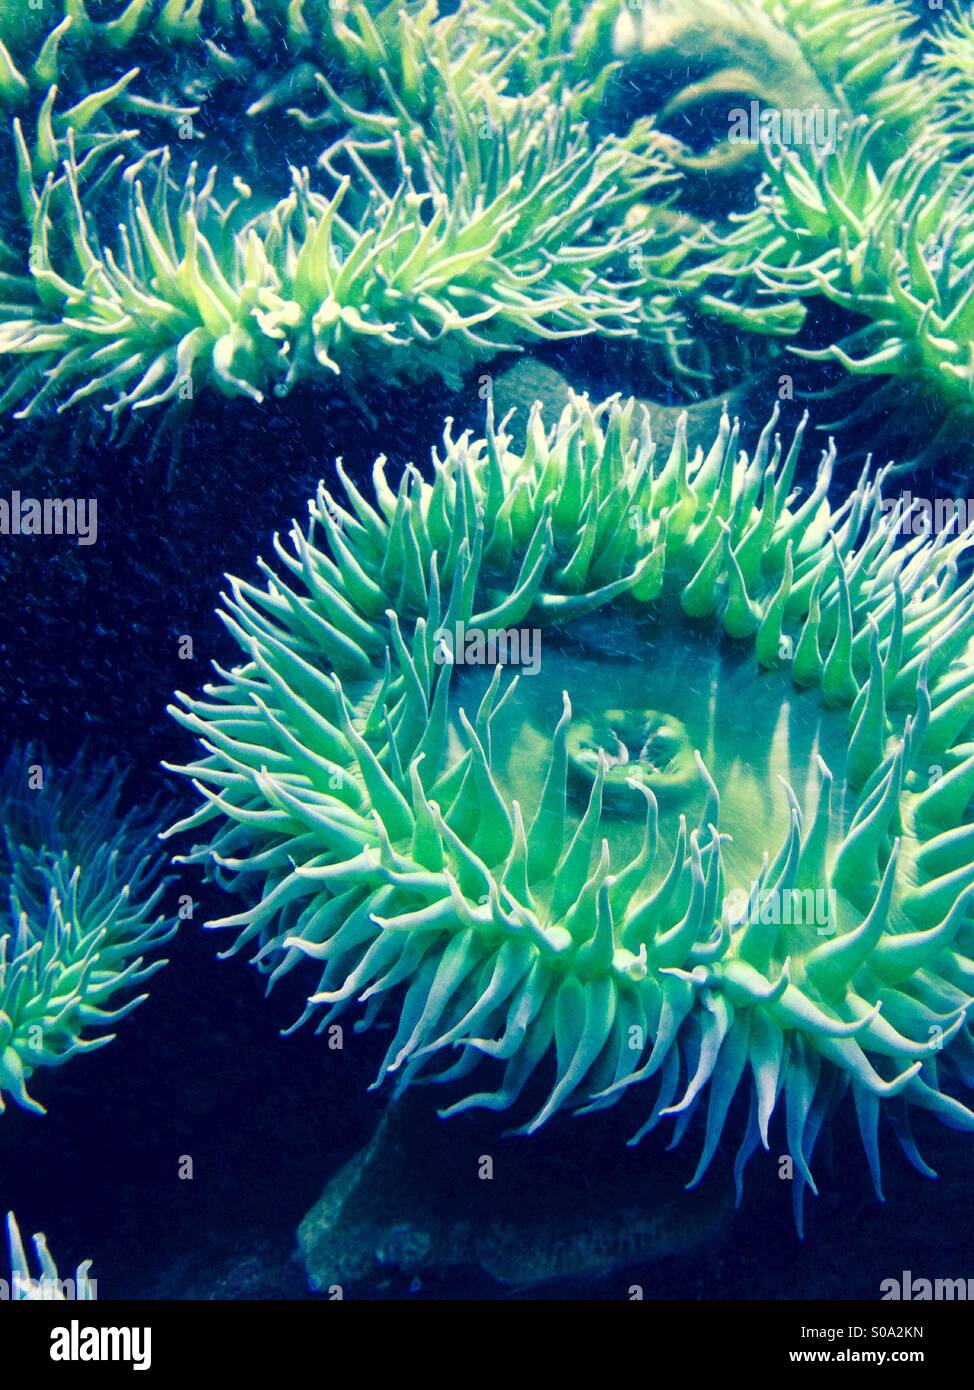 Sea anemone in an aquarium Stock Photo